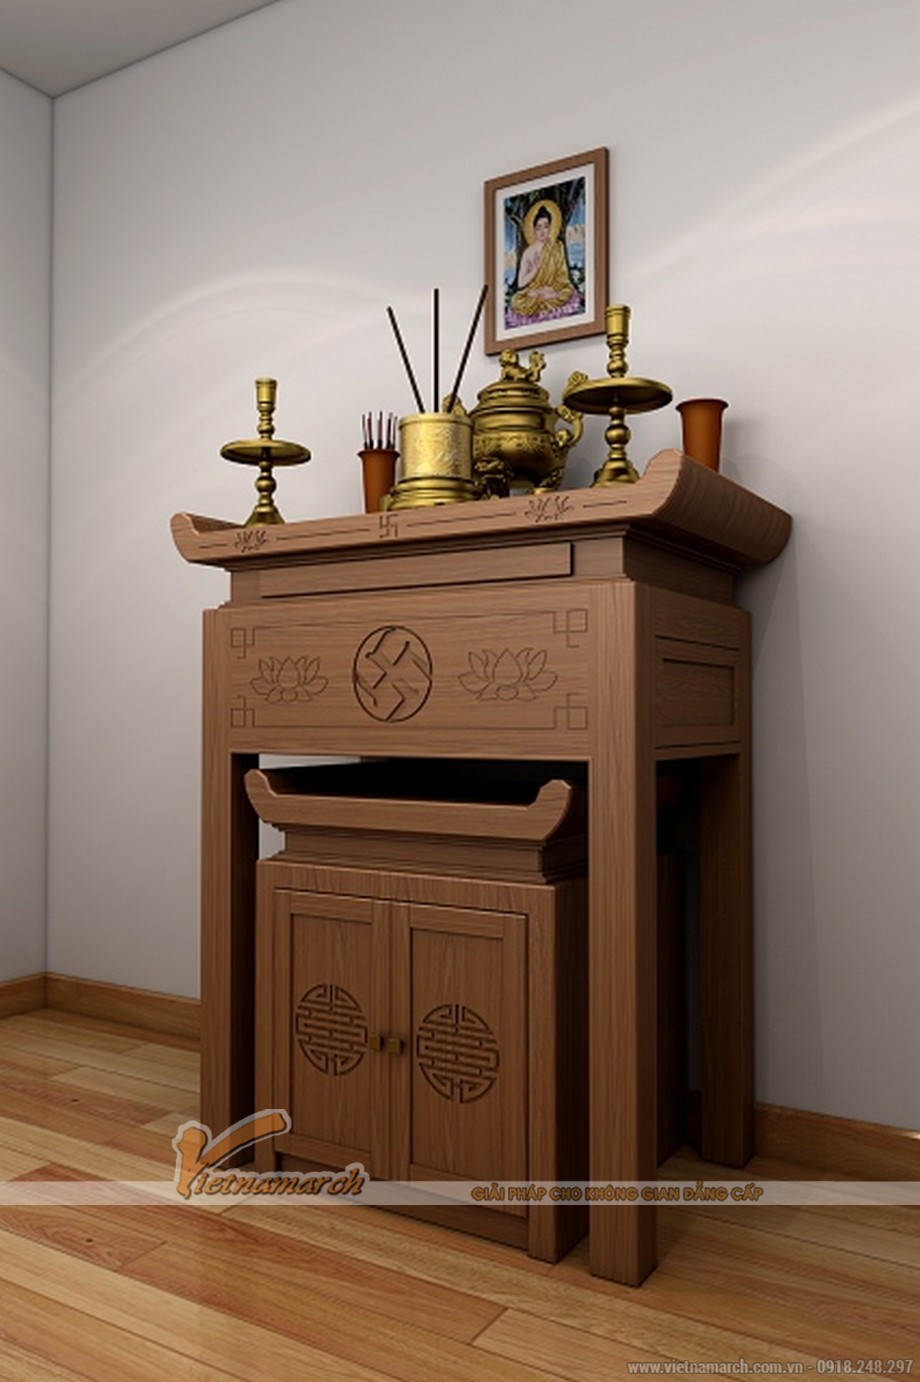 Những mẫu bàn thờ hiện đại cho ngôi nhà sang trọng > Những mẫu bàn thờ hiện đại cho ngôi nhà sang trọng 